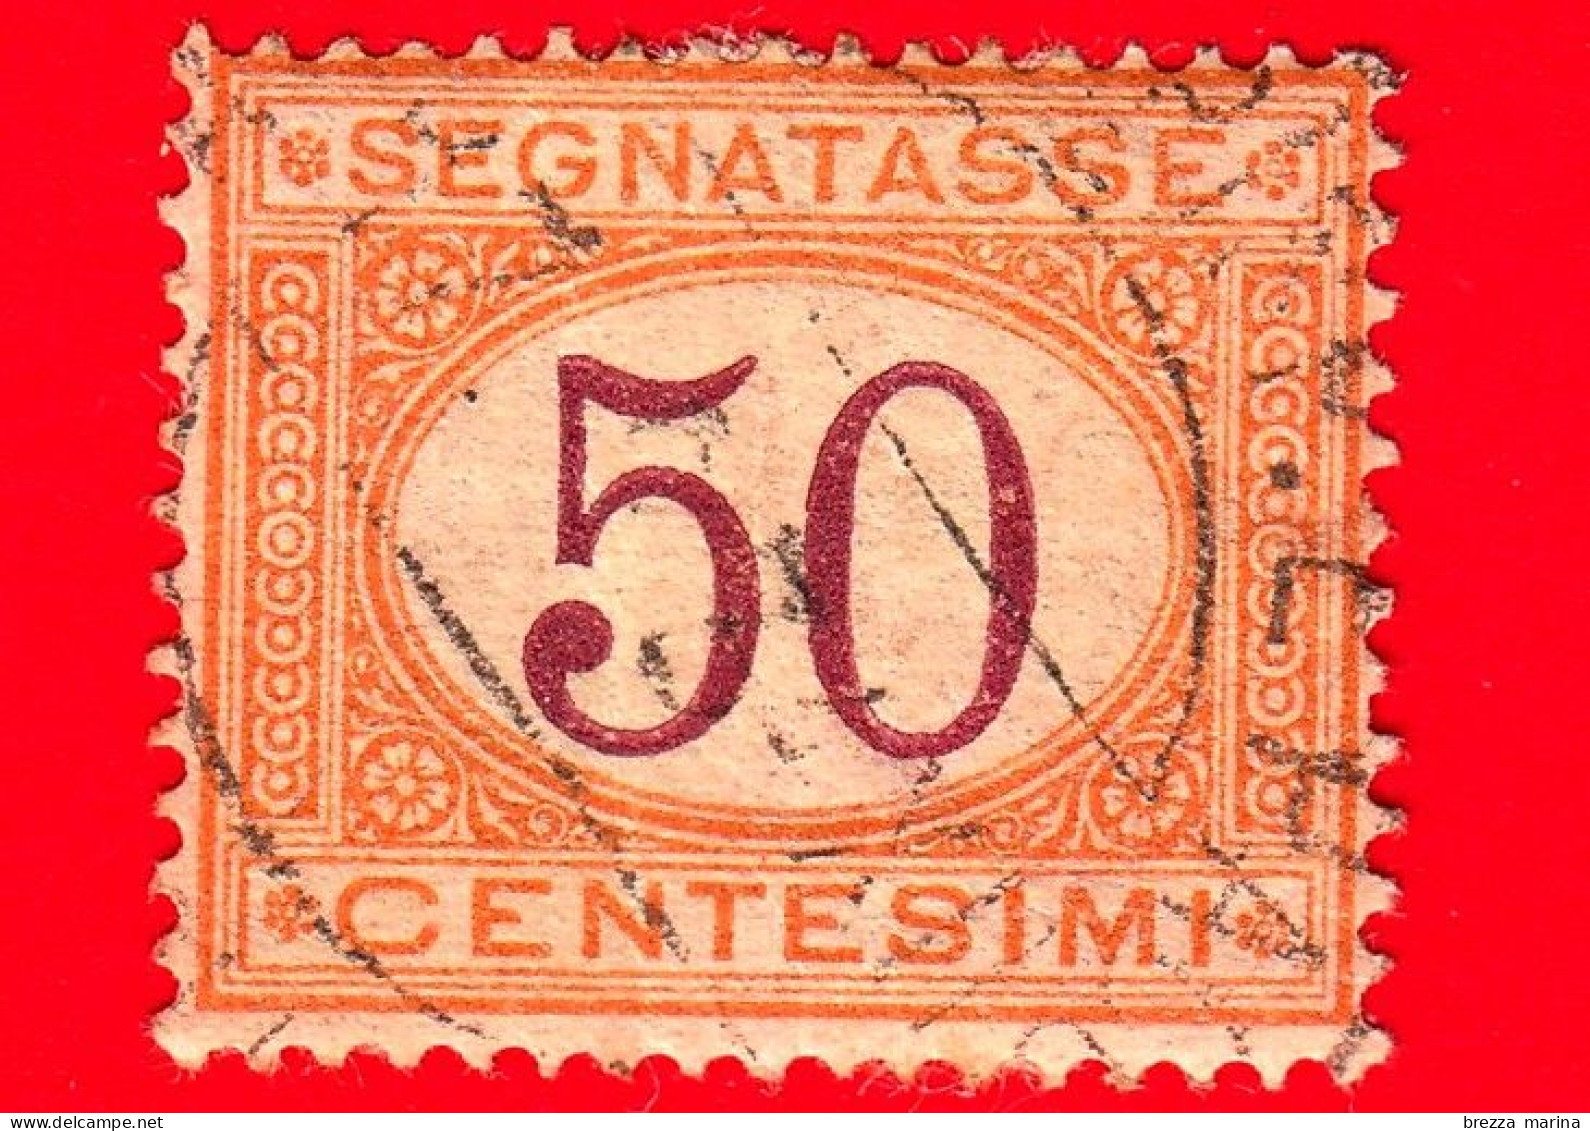 ITALIA - Usato -  1870 - 1890 - Segnatasse - Cifra Entro Un Ovale - 50 C. - Segnatasse